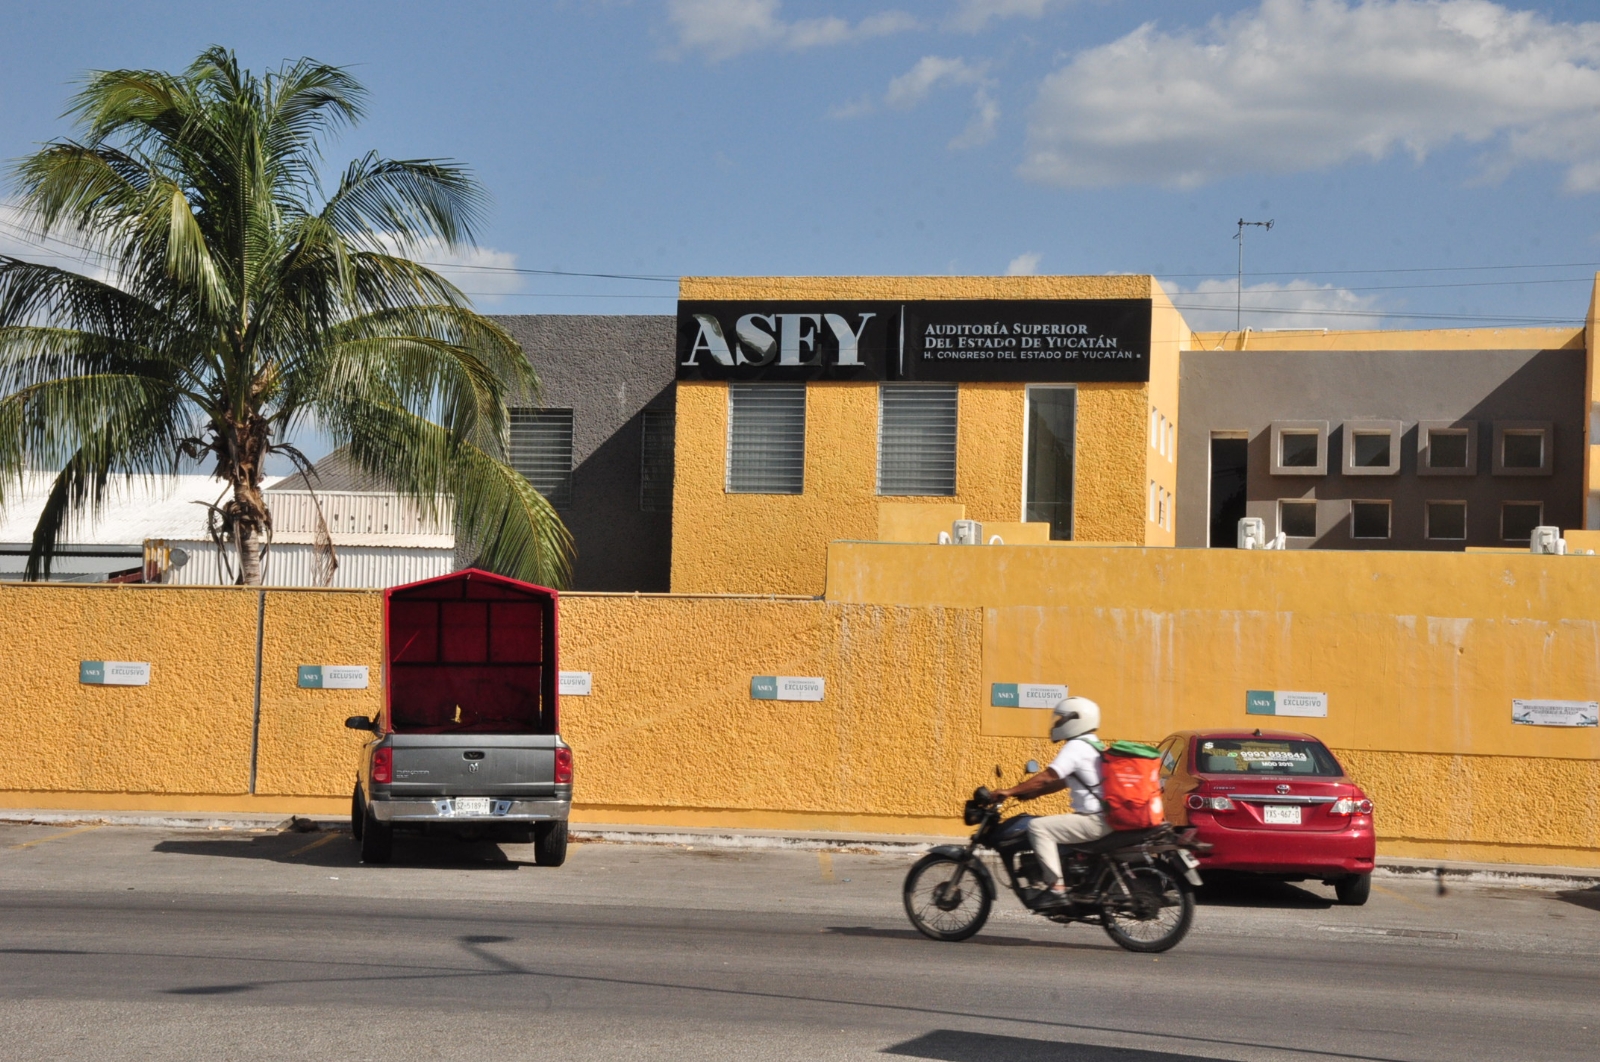 Auditoría Superior del Estado de Yucatán gastará millonada en viáticos